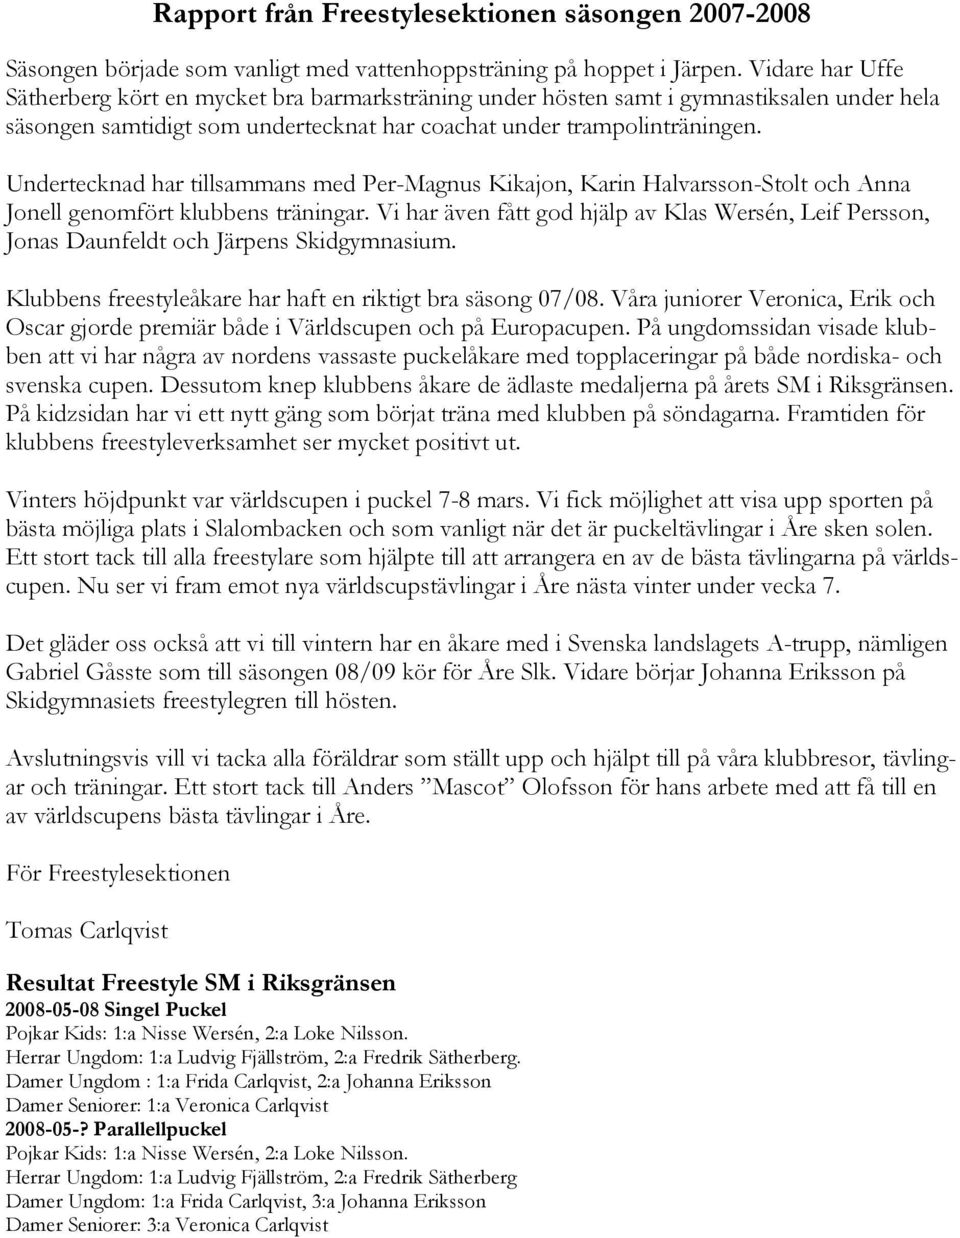 Undertecknad har tillsammans med Per-Magnus Kikajon, Karin Halvarsson-Stolt och Anna Jonell genomfört klubbens träningar.